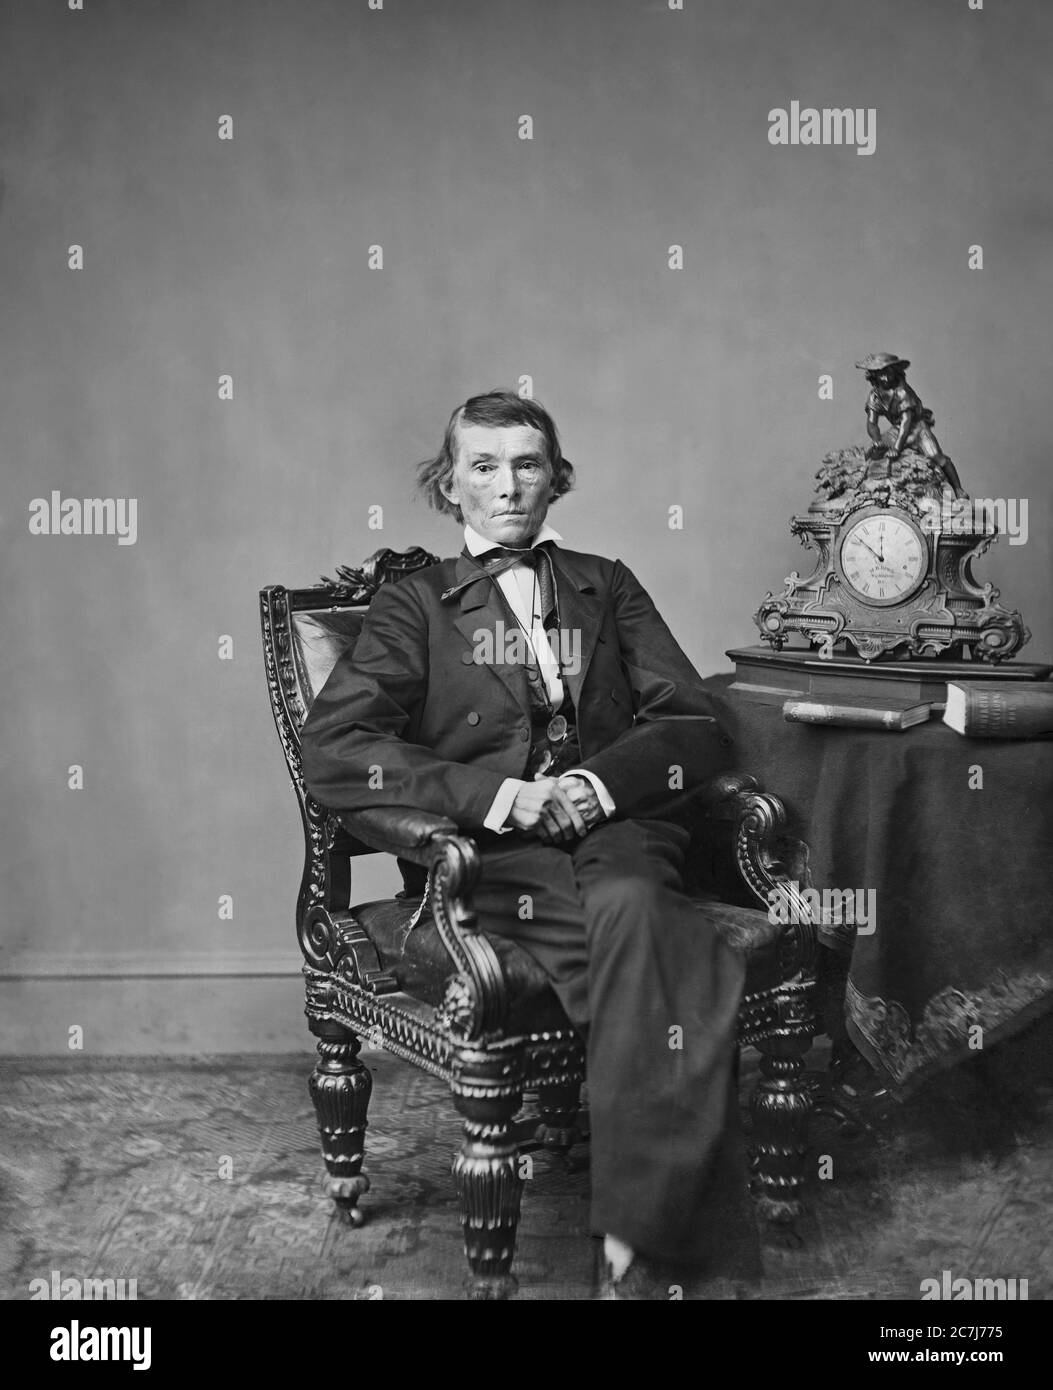 Alexander Hamilton Stephens, Vizepräsident der Konföderierten Staaten von Amerika während des amerikanischen Bürgerkriegs, sitzendes Porträt, Brady-Handy Photographic Collection, 1865 Stockfoto